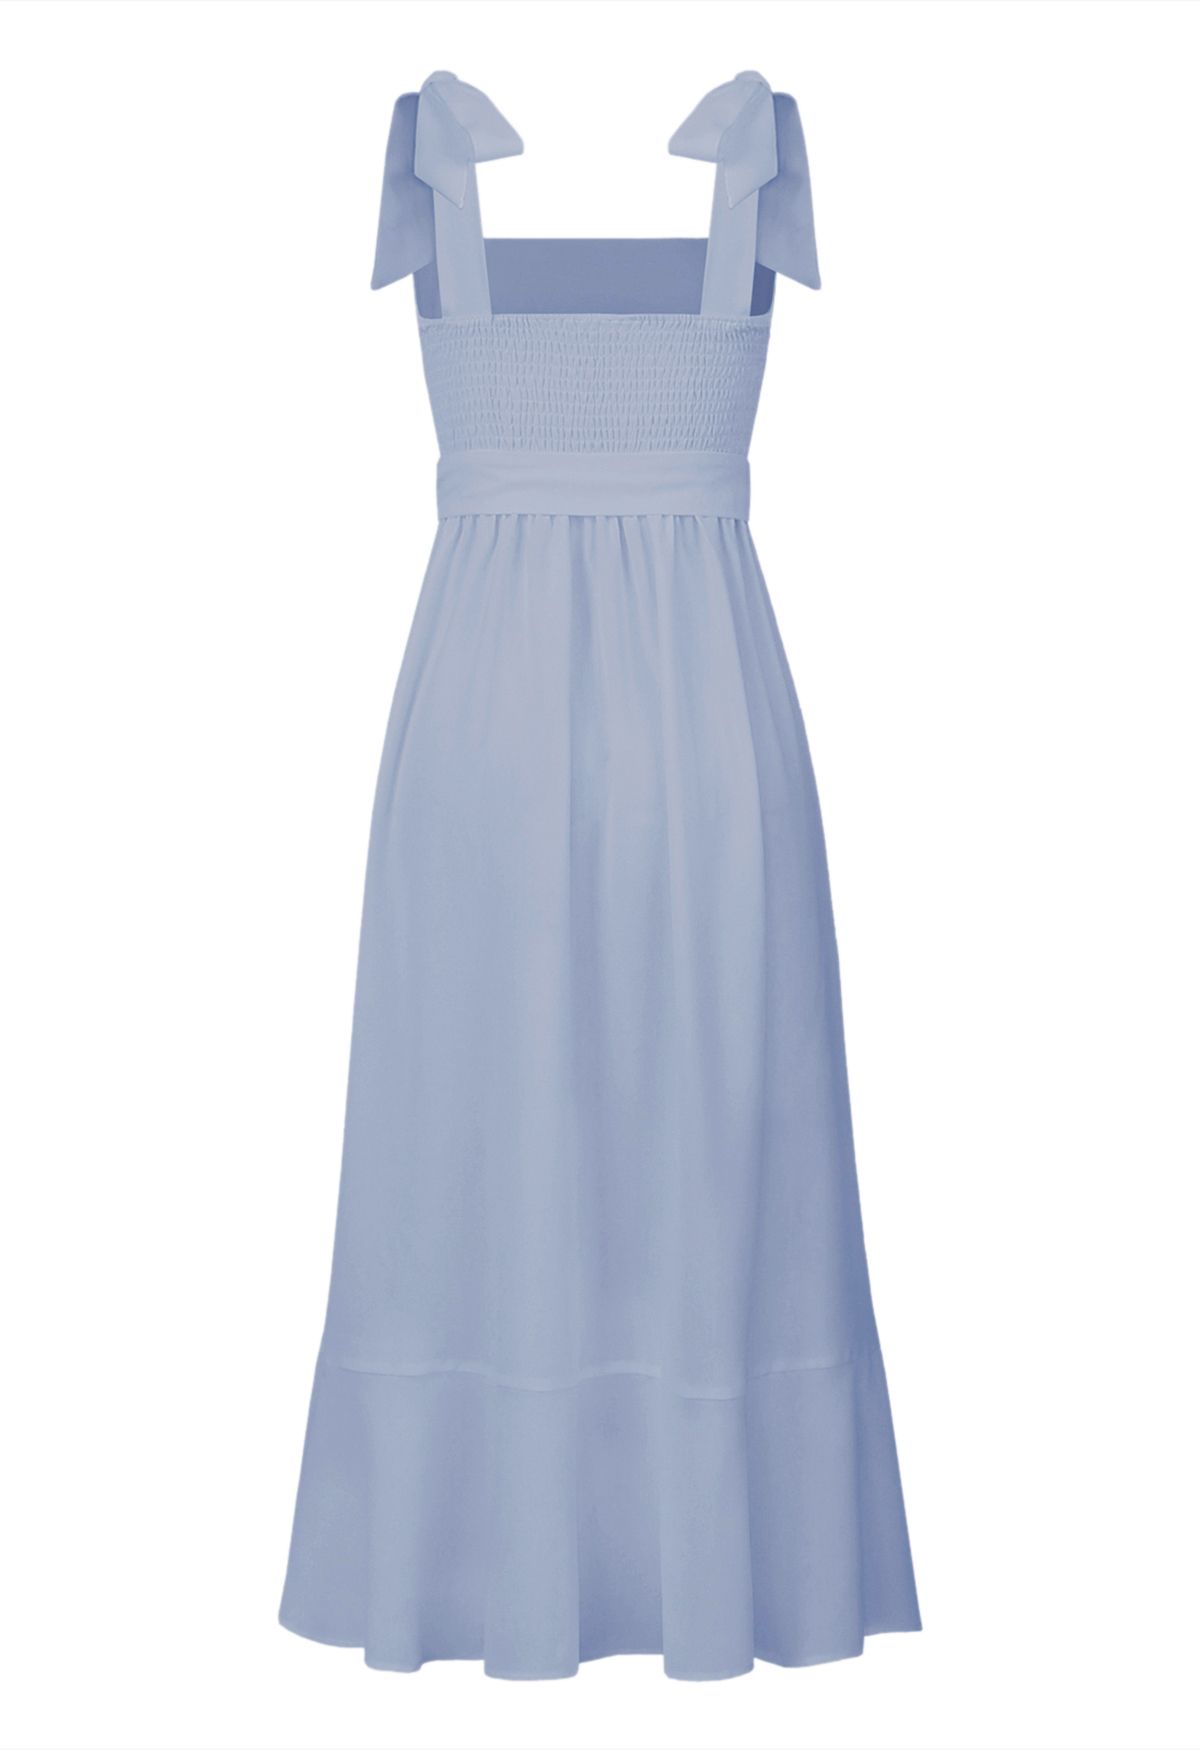 Ruffle Hem Tie-Shoulder Cami Dress in Dusty Blue